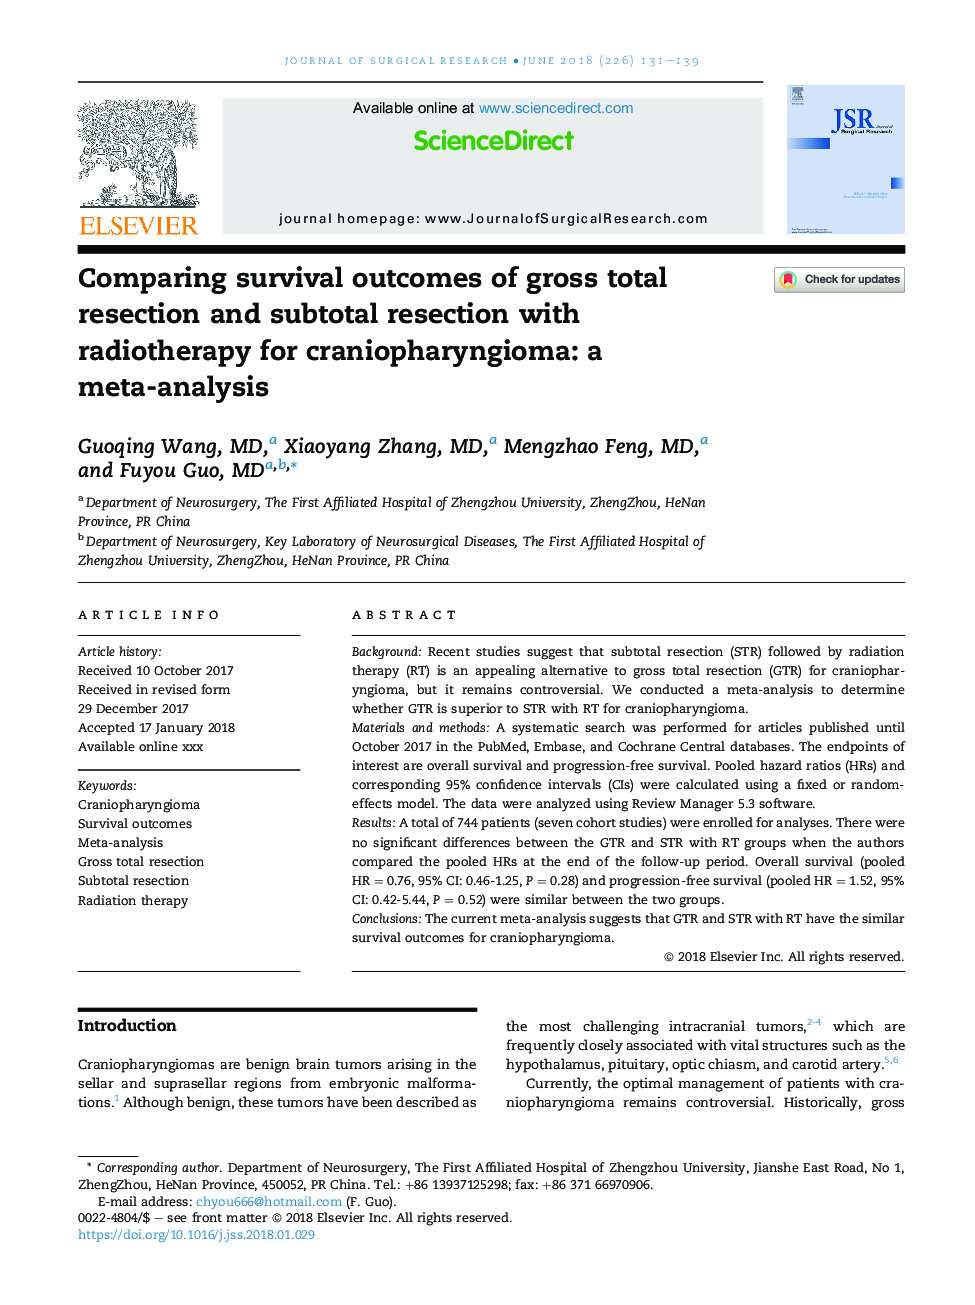 مقایسه نتایج زنده ماندن رزکسیون ناخالصی و رزکسیون زیر جلدی با رادیوتراپی برای کرانیوفارنژیوم: یک متاآنالیز 